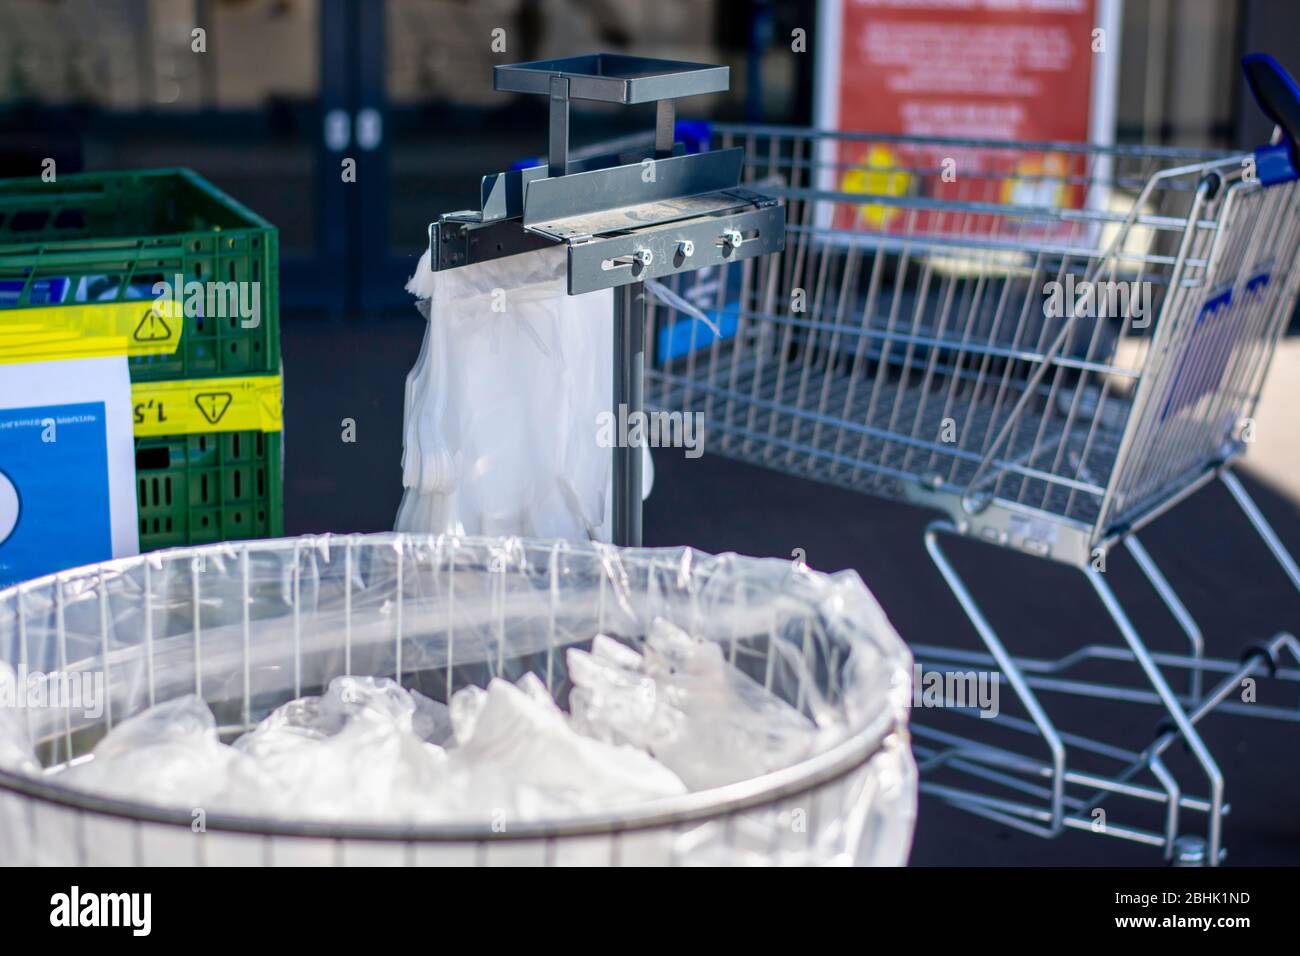 Papelera llena de toallitas desechables usadas y guantes de plástico en la entrada de un supermercado para proteger a los clientes contra la infección por coronavirus covid-19 Foto de stock